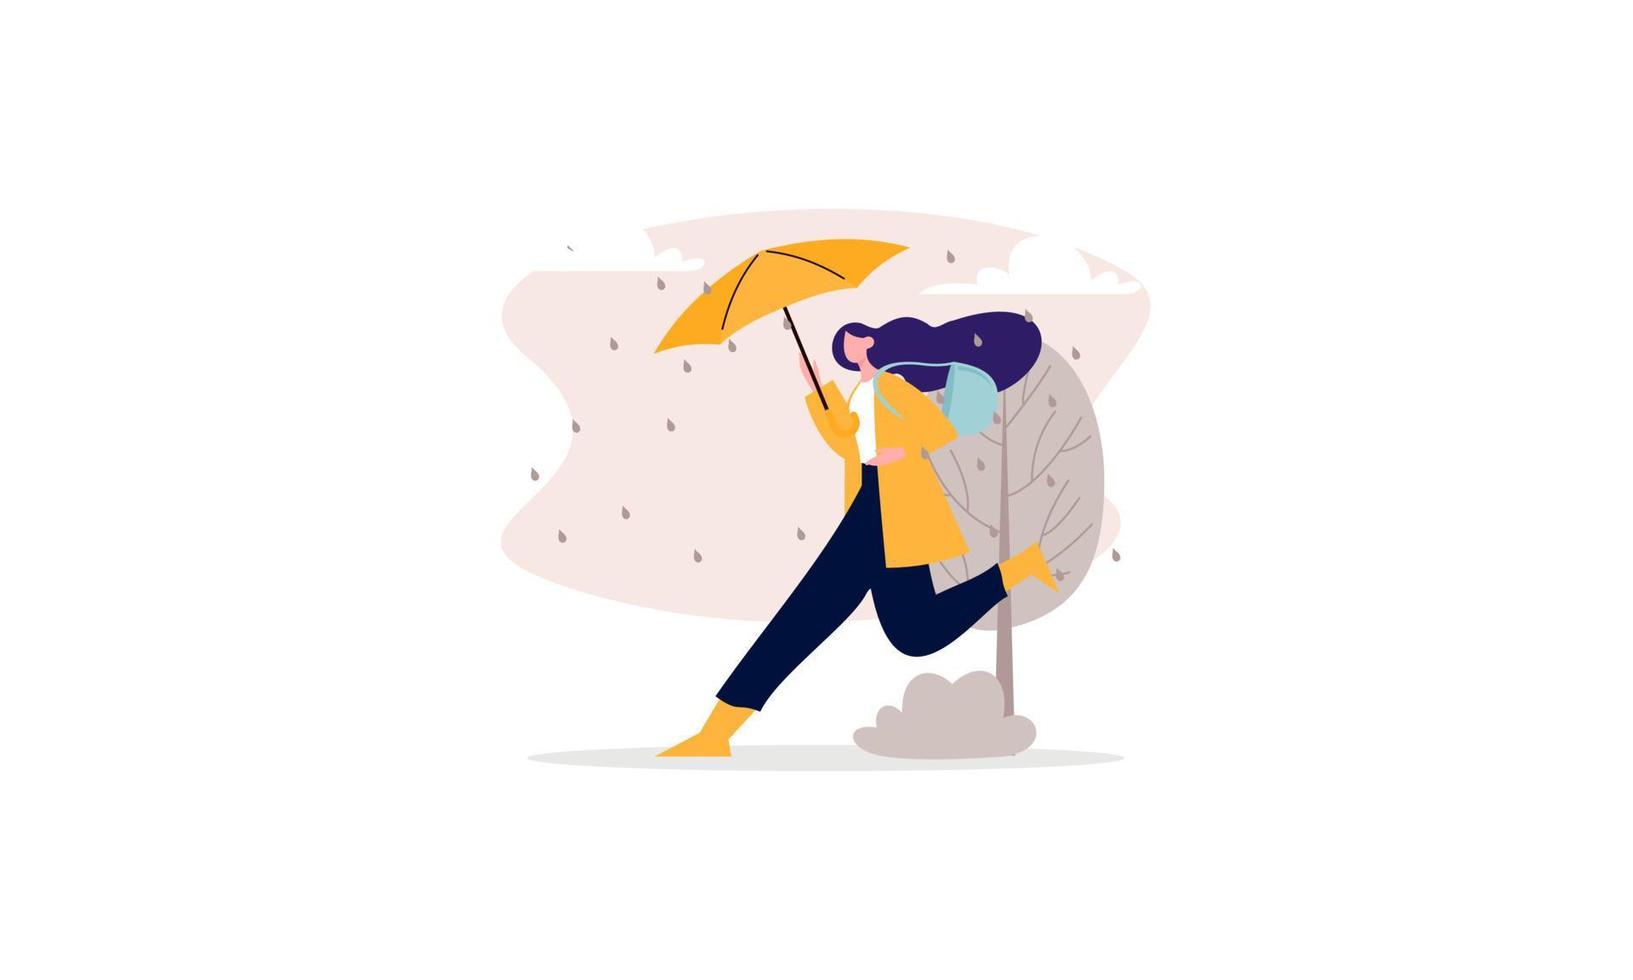 la gente che cammina con gli ombrelli fa il tempo con l'illustrazione dei paesaggi piovosi vettore